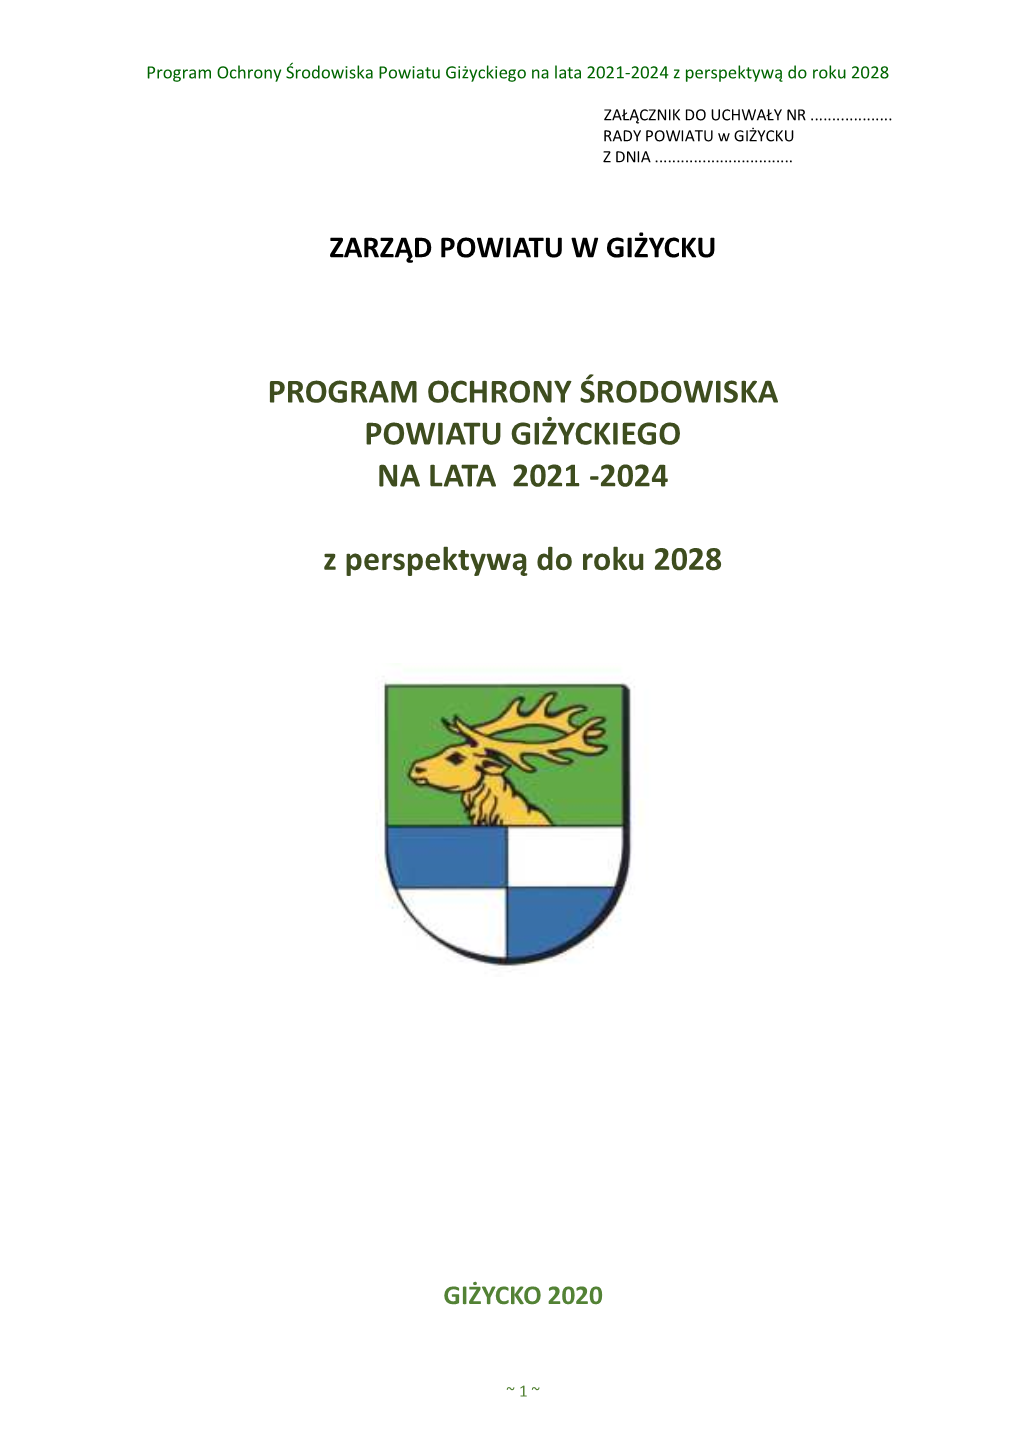 Program Ochrony Środowiska Powiatu Giżyckiego Na Lata 2020